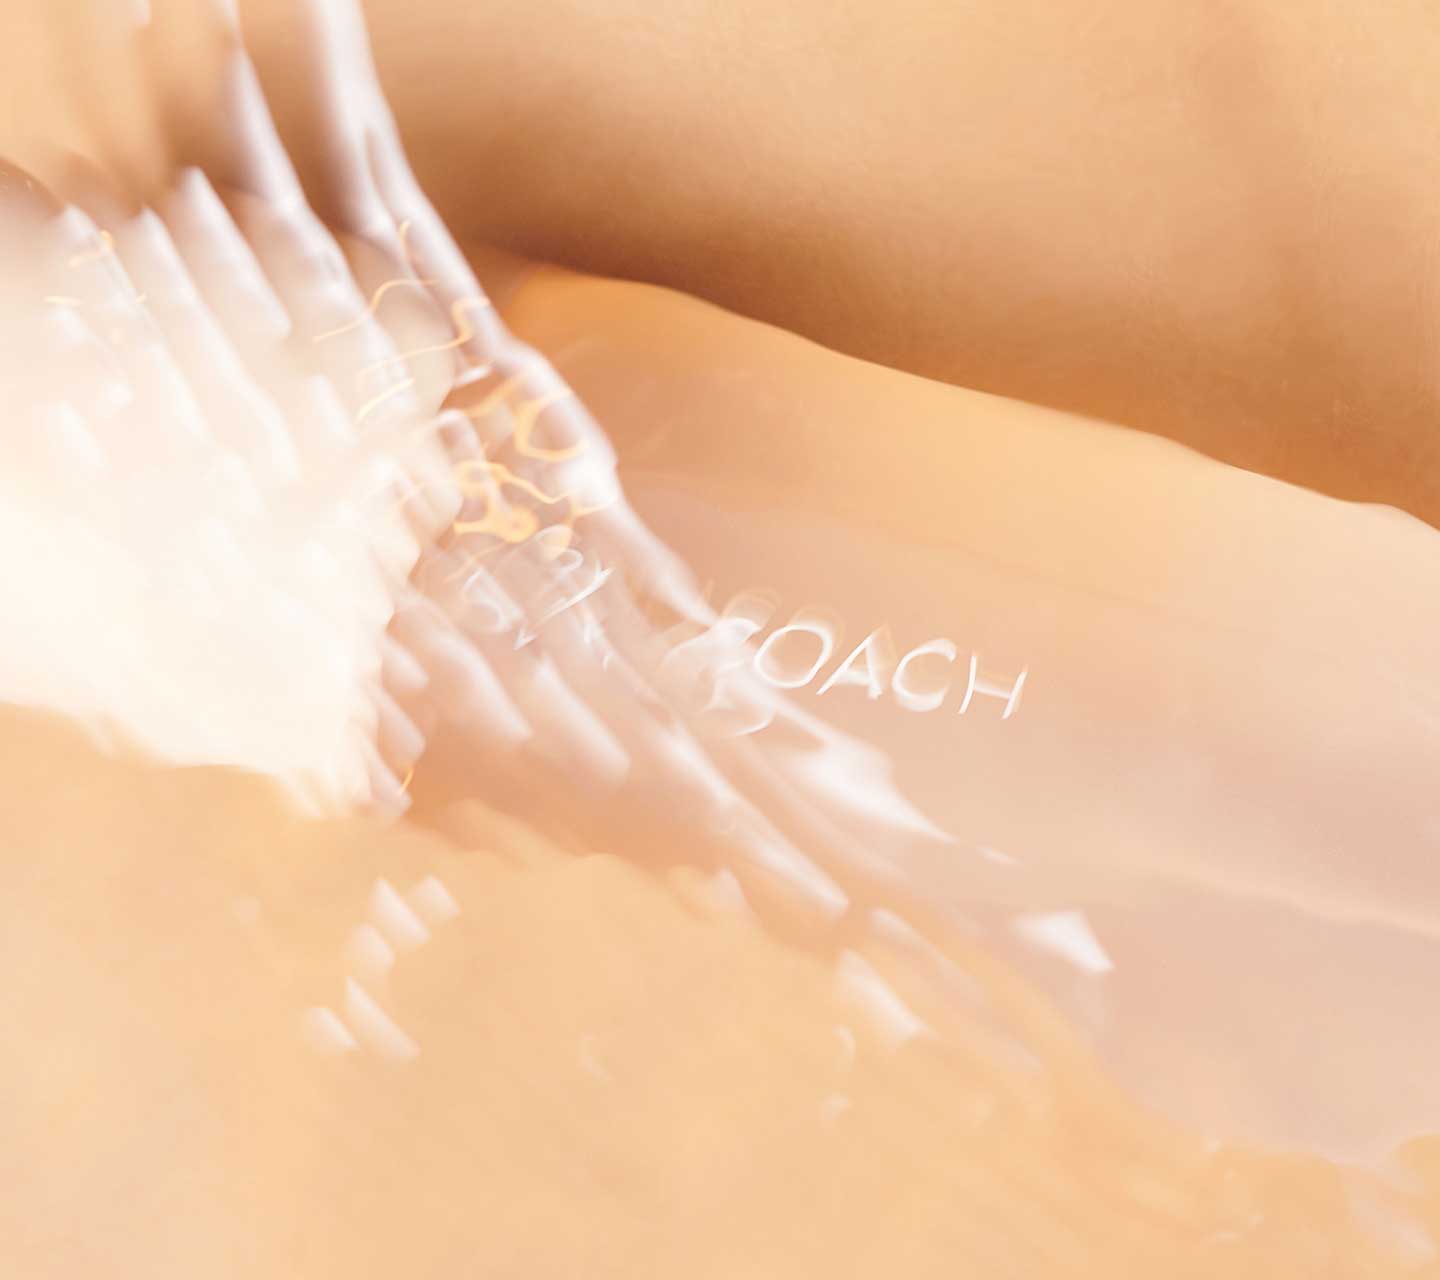 SKINCOACHは、美容のプロがコーチとして理想のお肌をお届けします